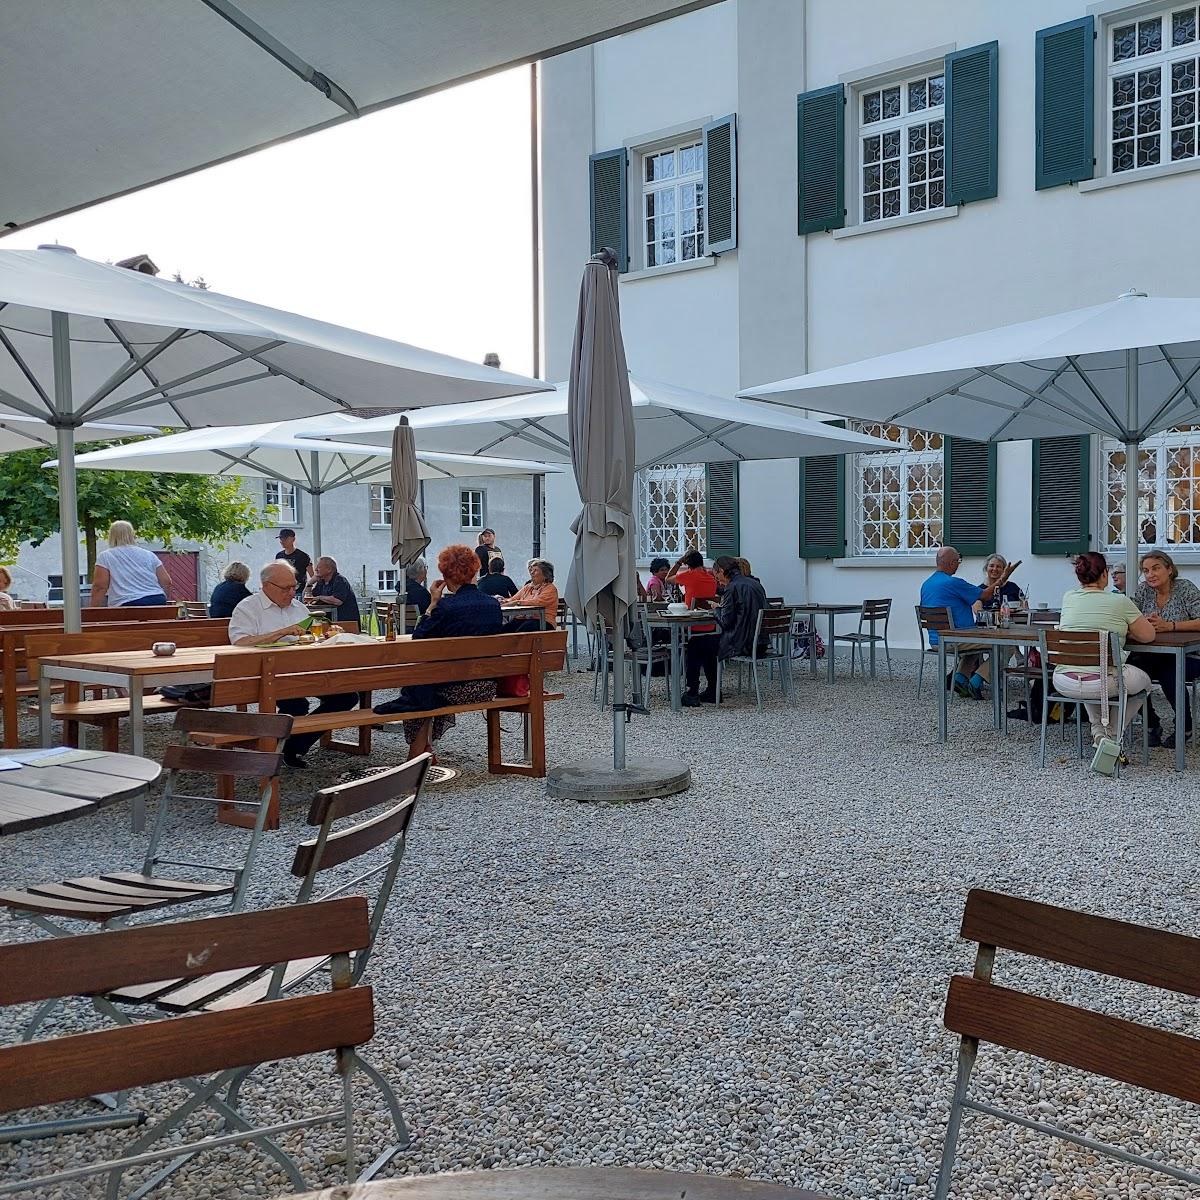 Restaurant "Kloster  Restaurant" in Fischingen